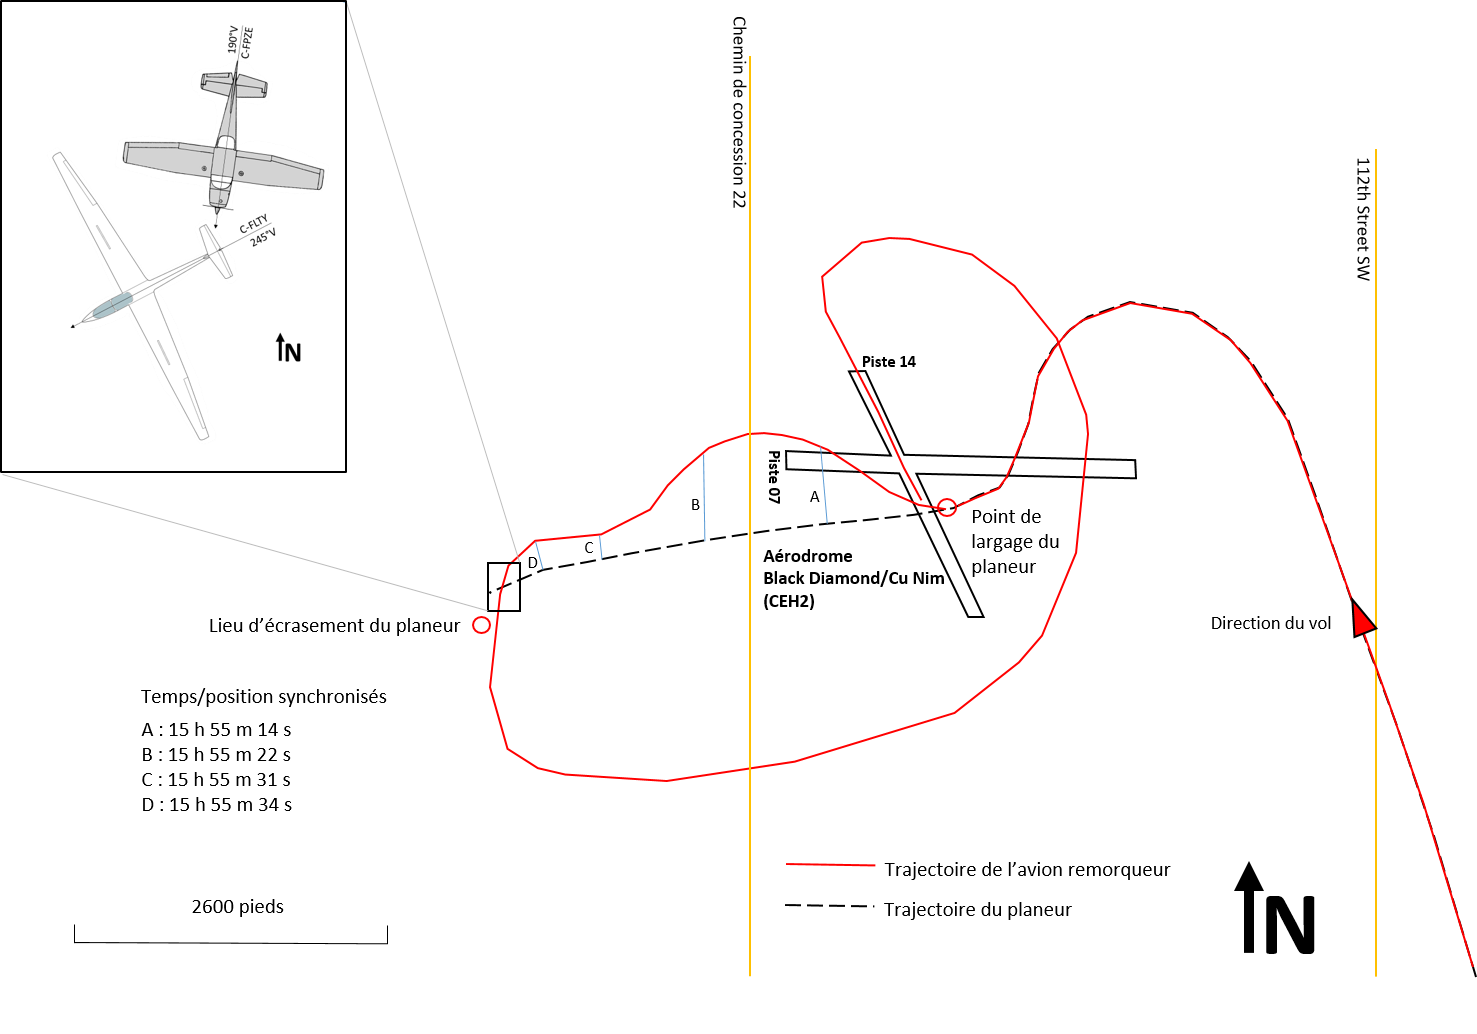 Aperçu des trajectoires de vol de l’avion remorqueur et du planeur, avec en médaillon un diagramme montrant les positions des aéronefs au moment de la collision (Source : BST)